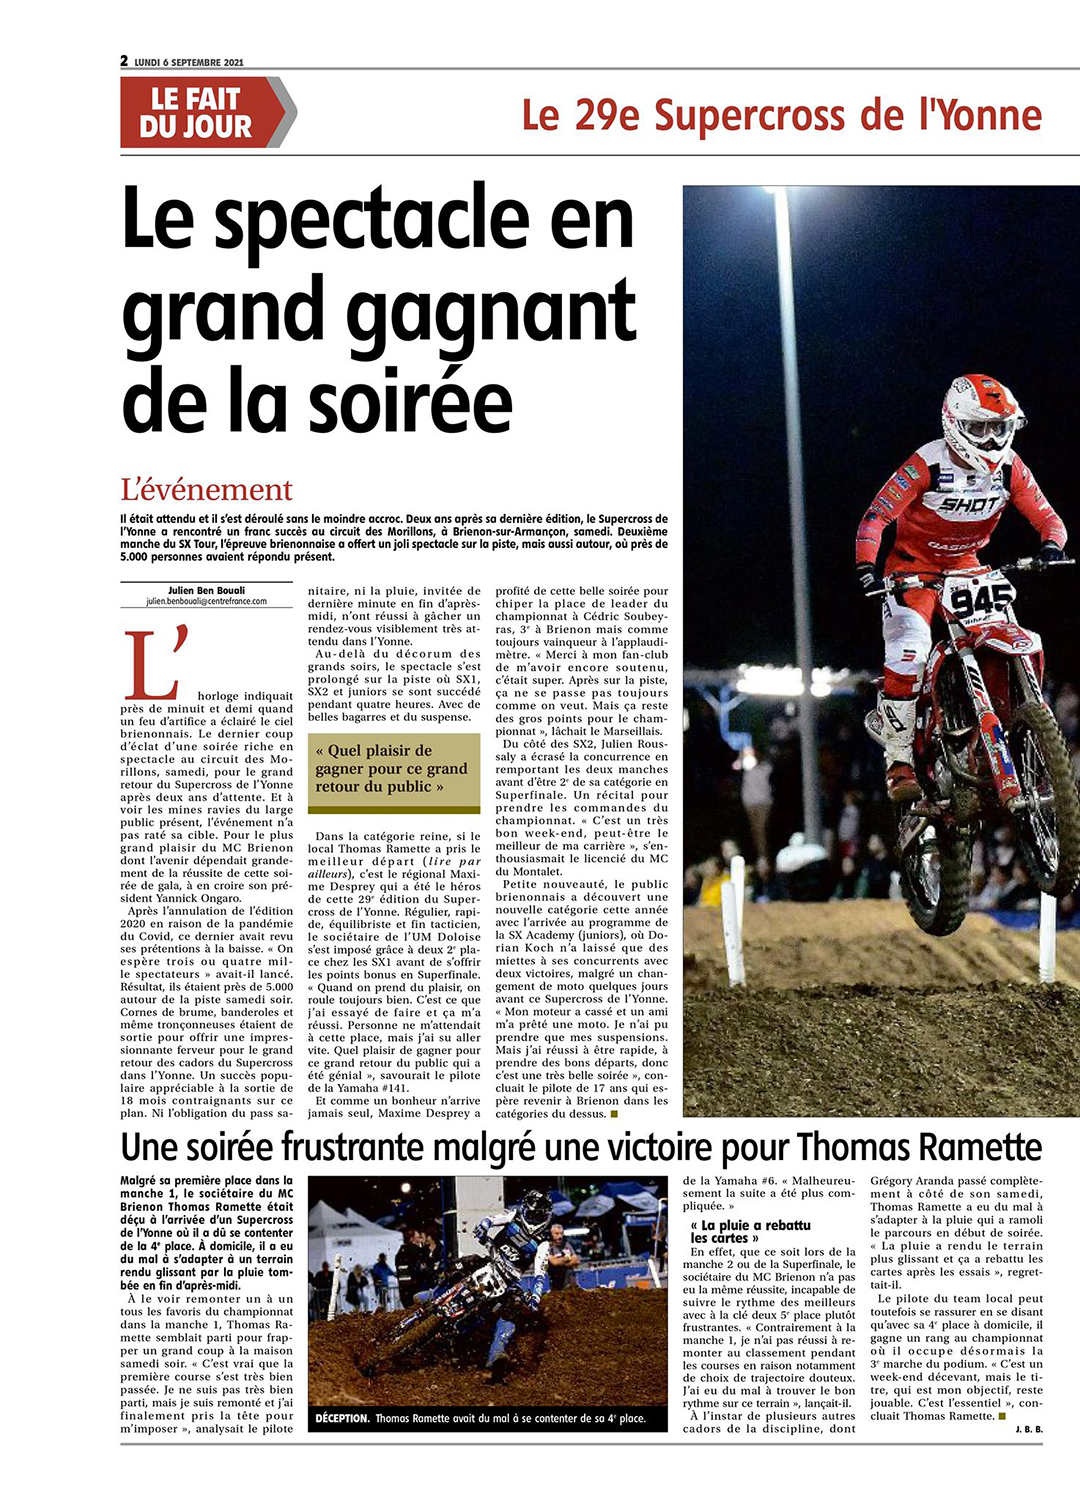 Supercross de l'Yonne 2021 - Article YR du 6 septembre